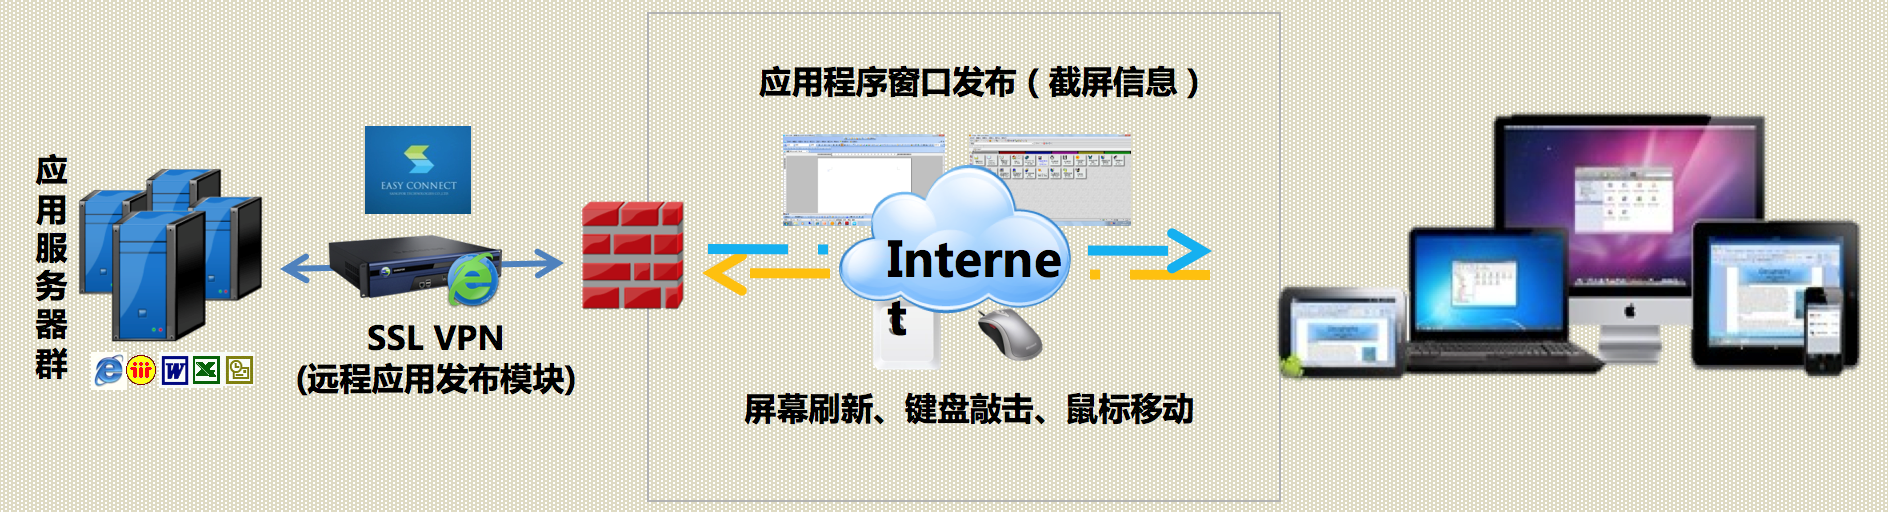 福建深信服VPN哪个品牌好 上海雪莱信息科技供应